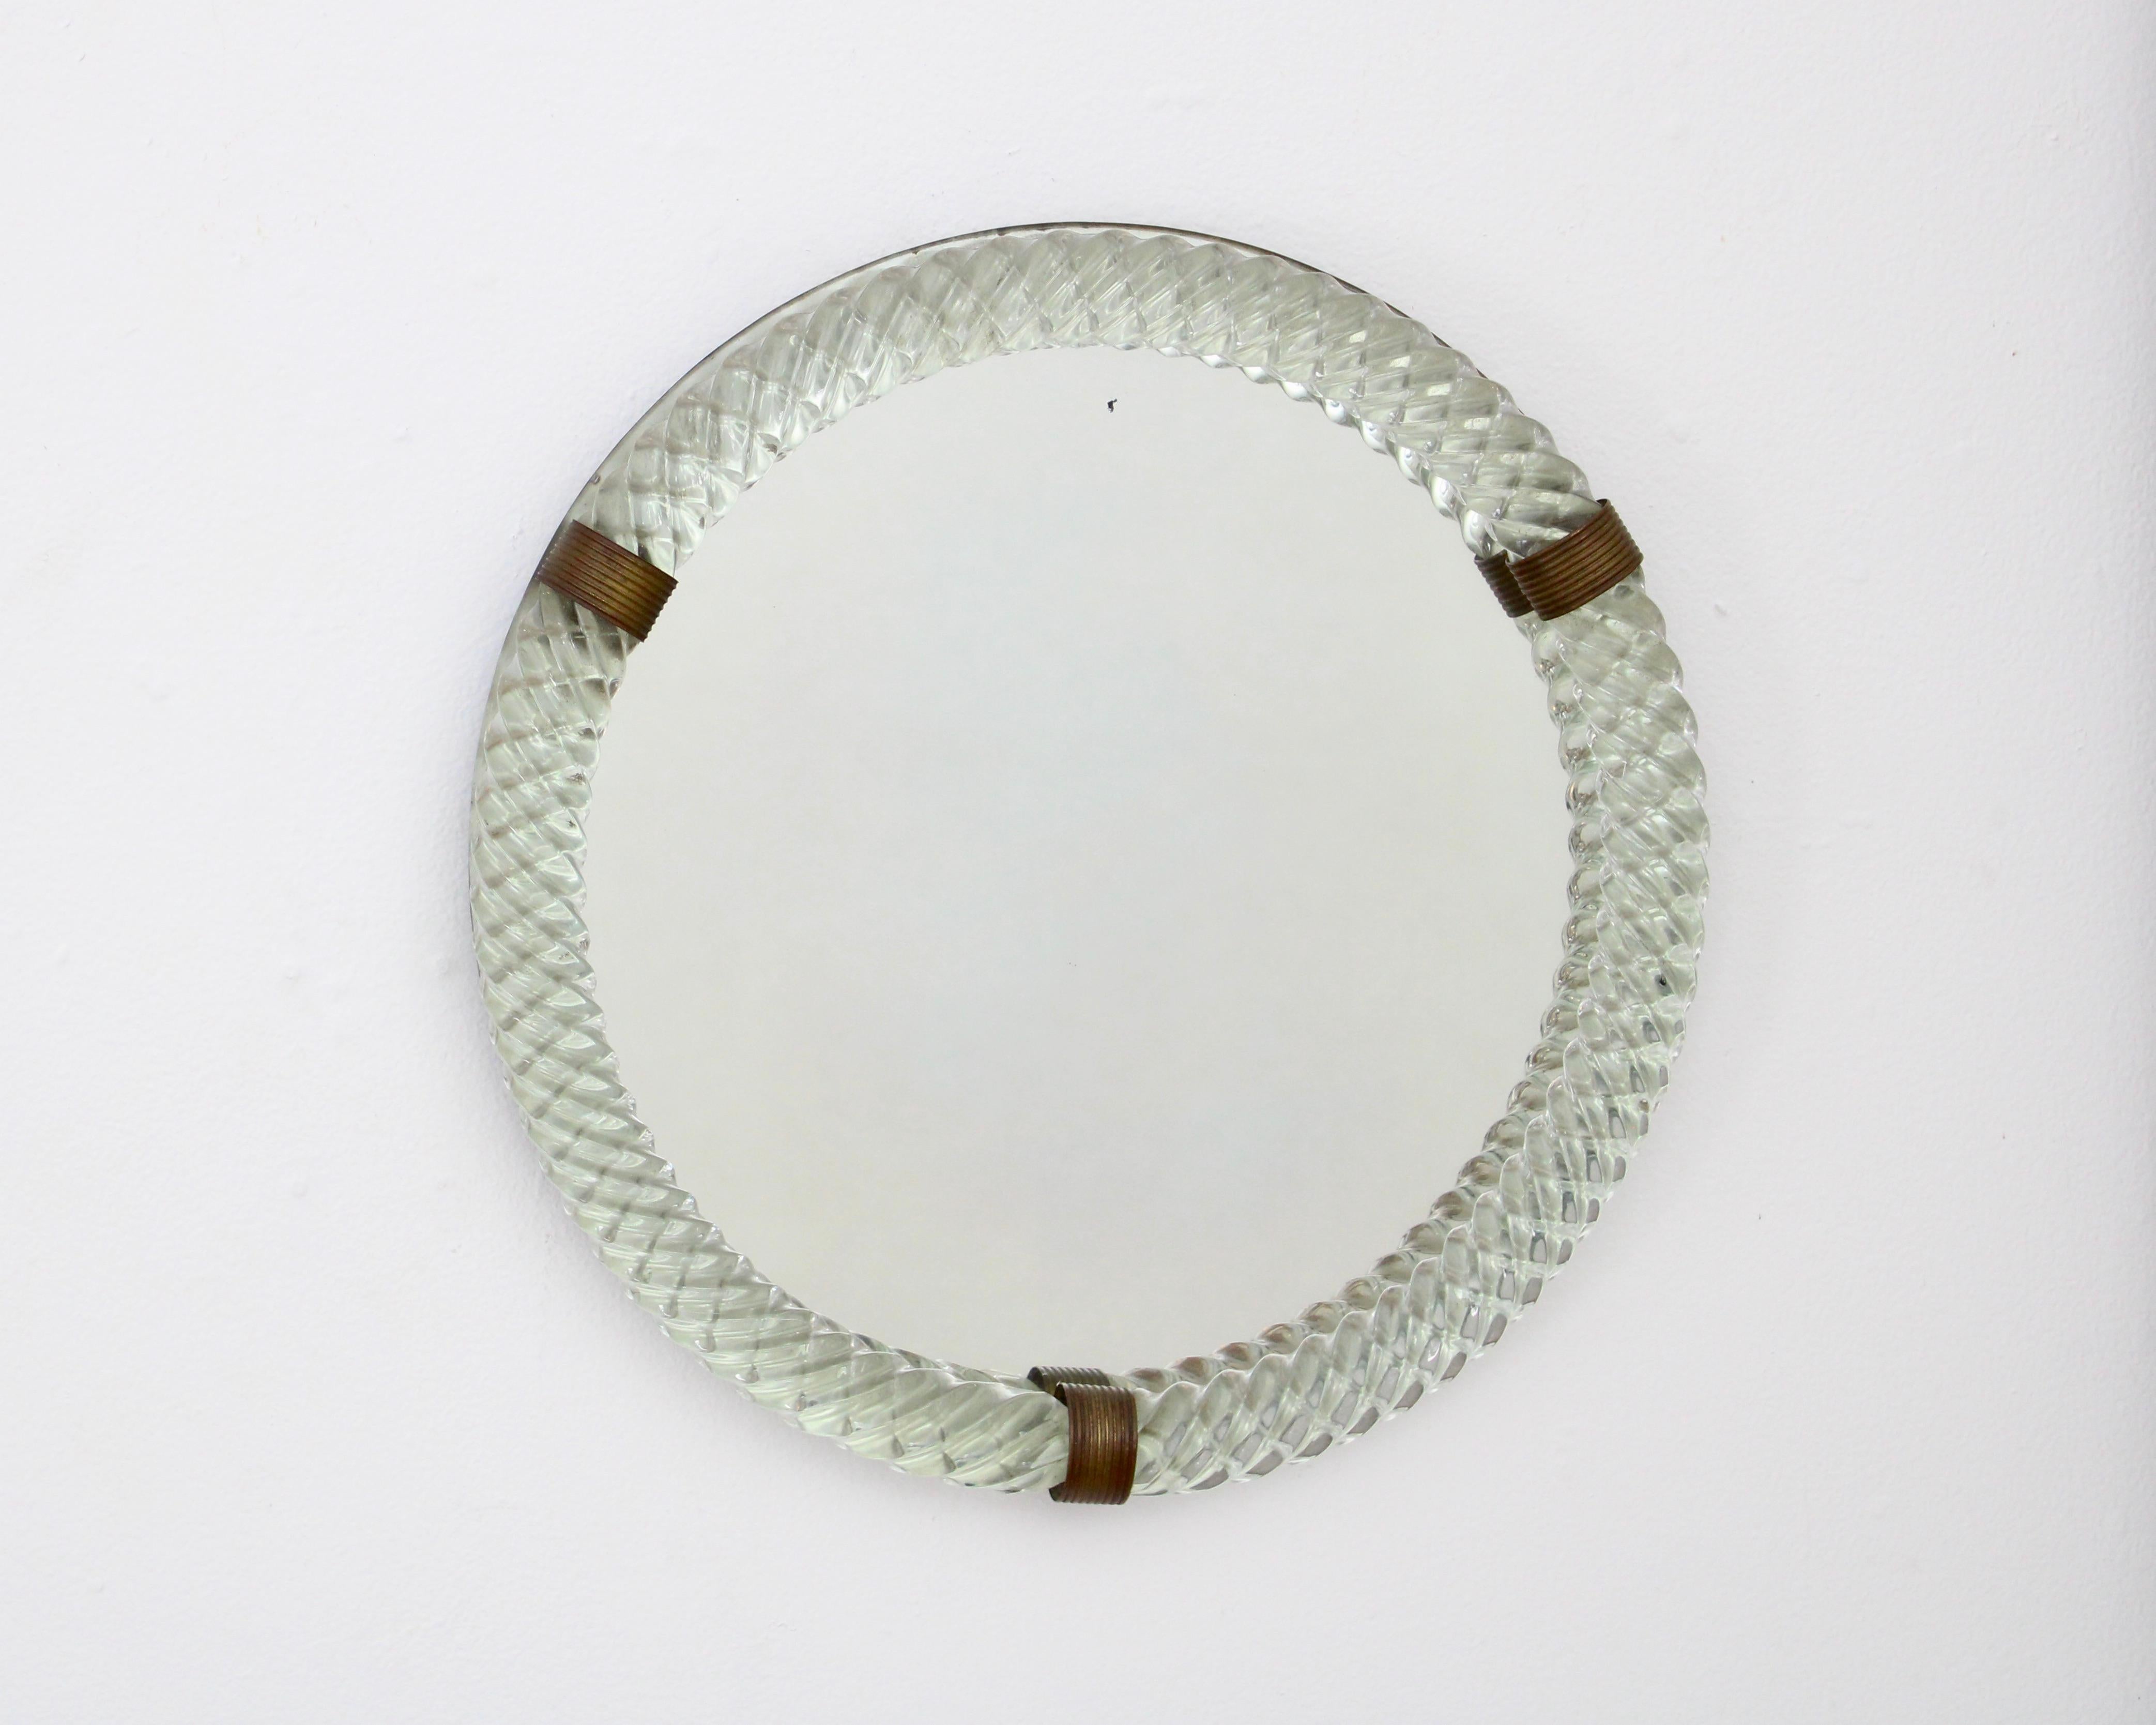 Paolo Venini for Venini cordonato round Murano glass mirror in pale green with patina brass accents. 
Unsigned. Excellent condition circa 1935 
Overall size: 16